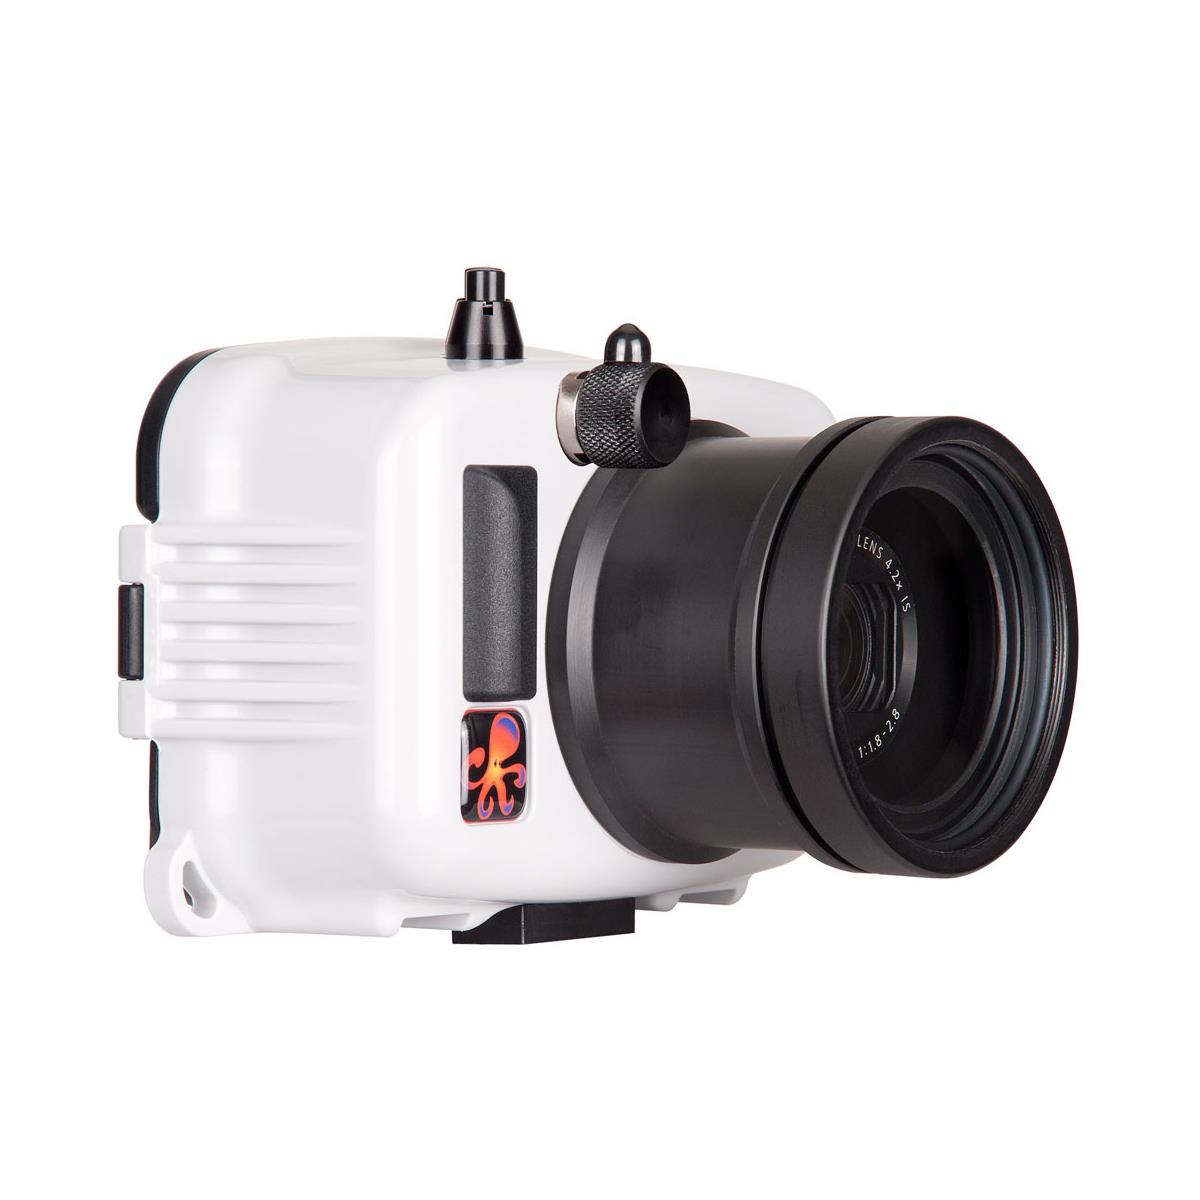 Ikelite Underwater Action Housing for Canon PowerShot G7X Mark II X Camera -  6245.08